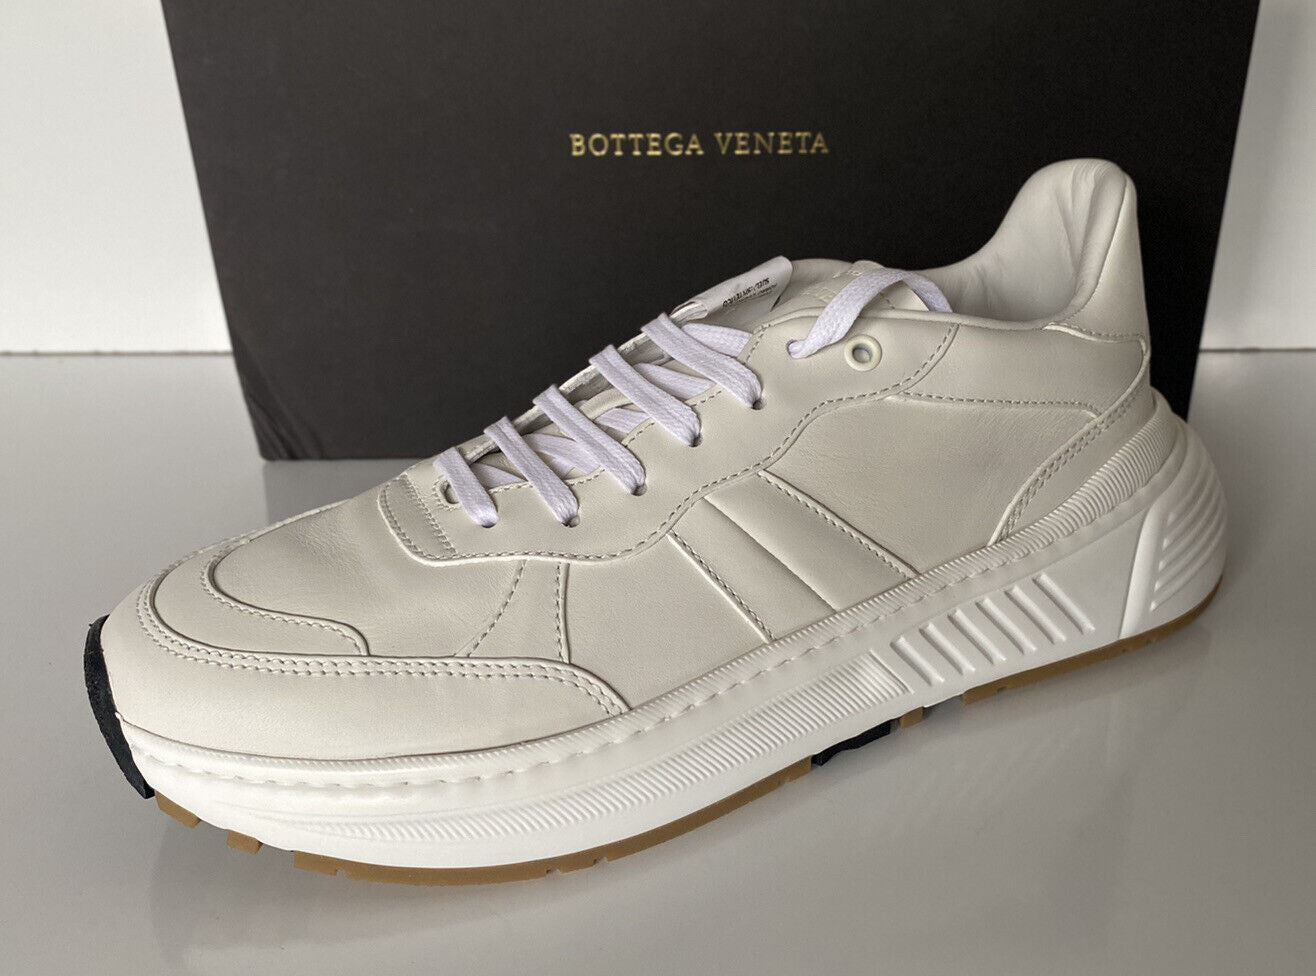 NIB $ 850 Bottega Veneta Herren-Sneakers aus weißem Kalbsleder 10,5 US 565646 9117 